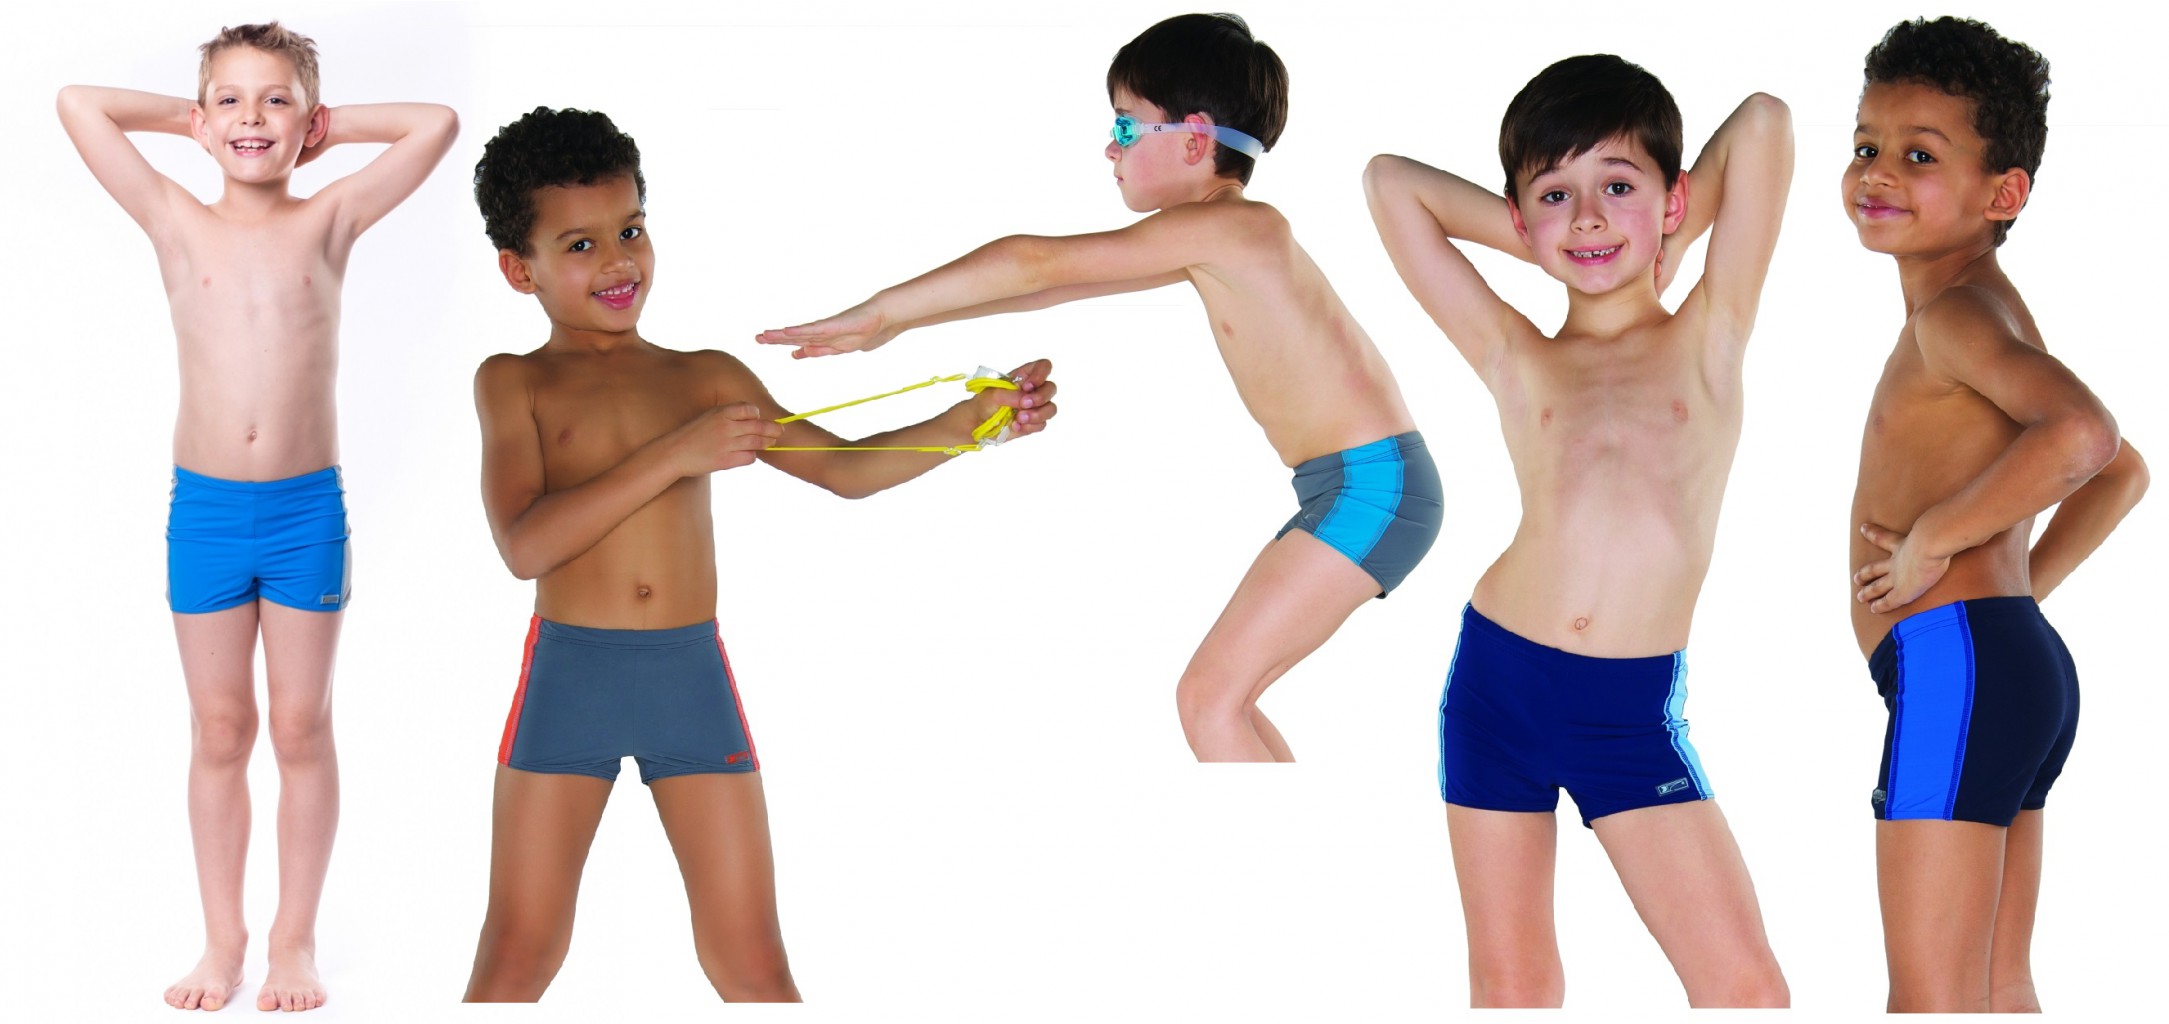 голые попы мальчиков с 9 лет фото 105